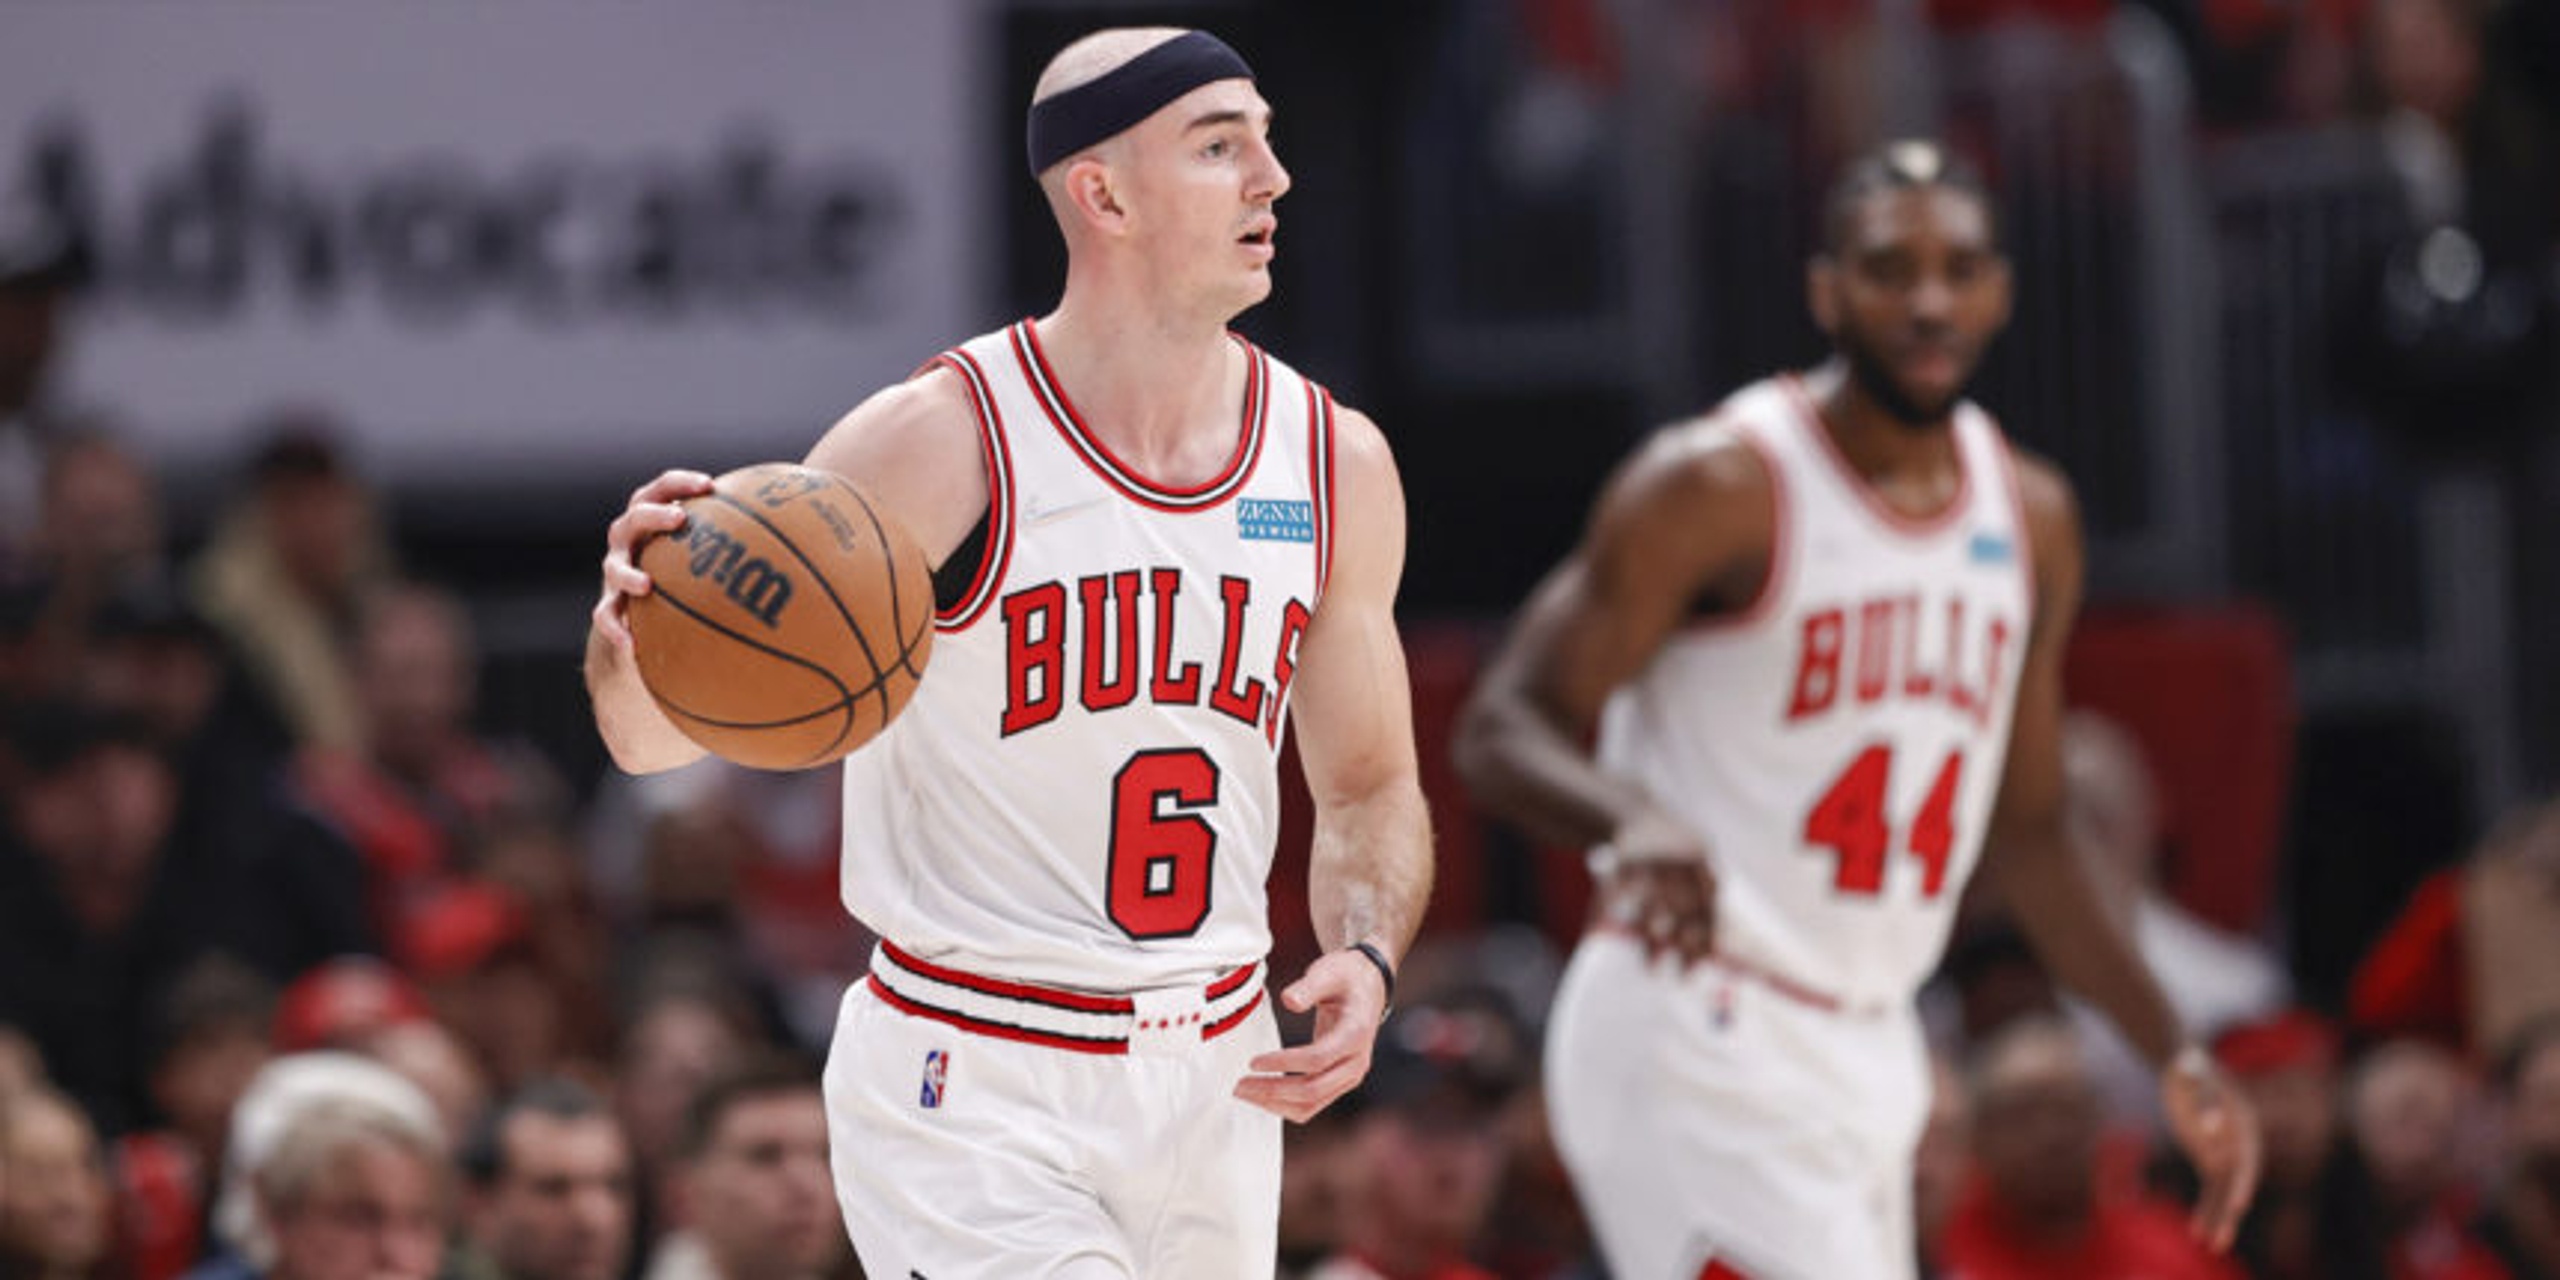 Bulls’ Caruso in concussion protocol ahead of Bucks' Game 5